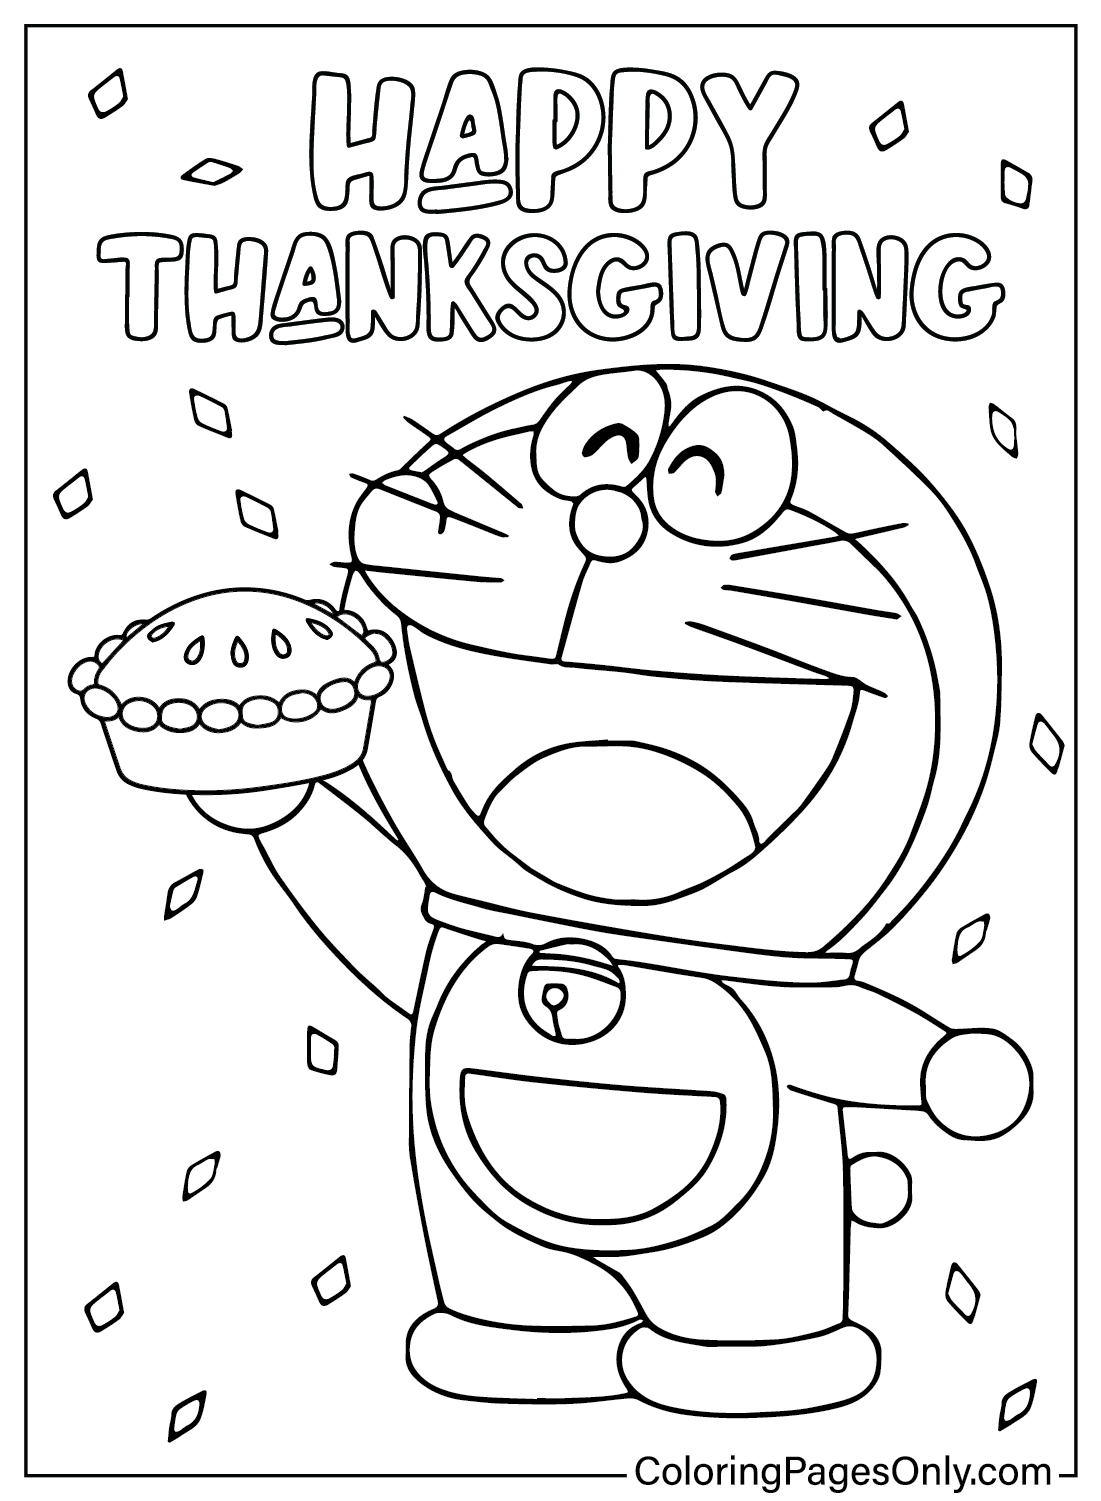 Página para colorear de Doreamon de Acción de Gracias de dibujos animados de Acción de Gracias